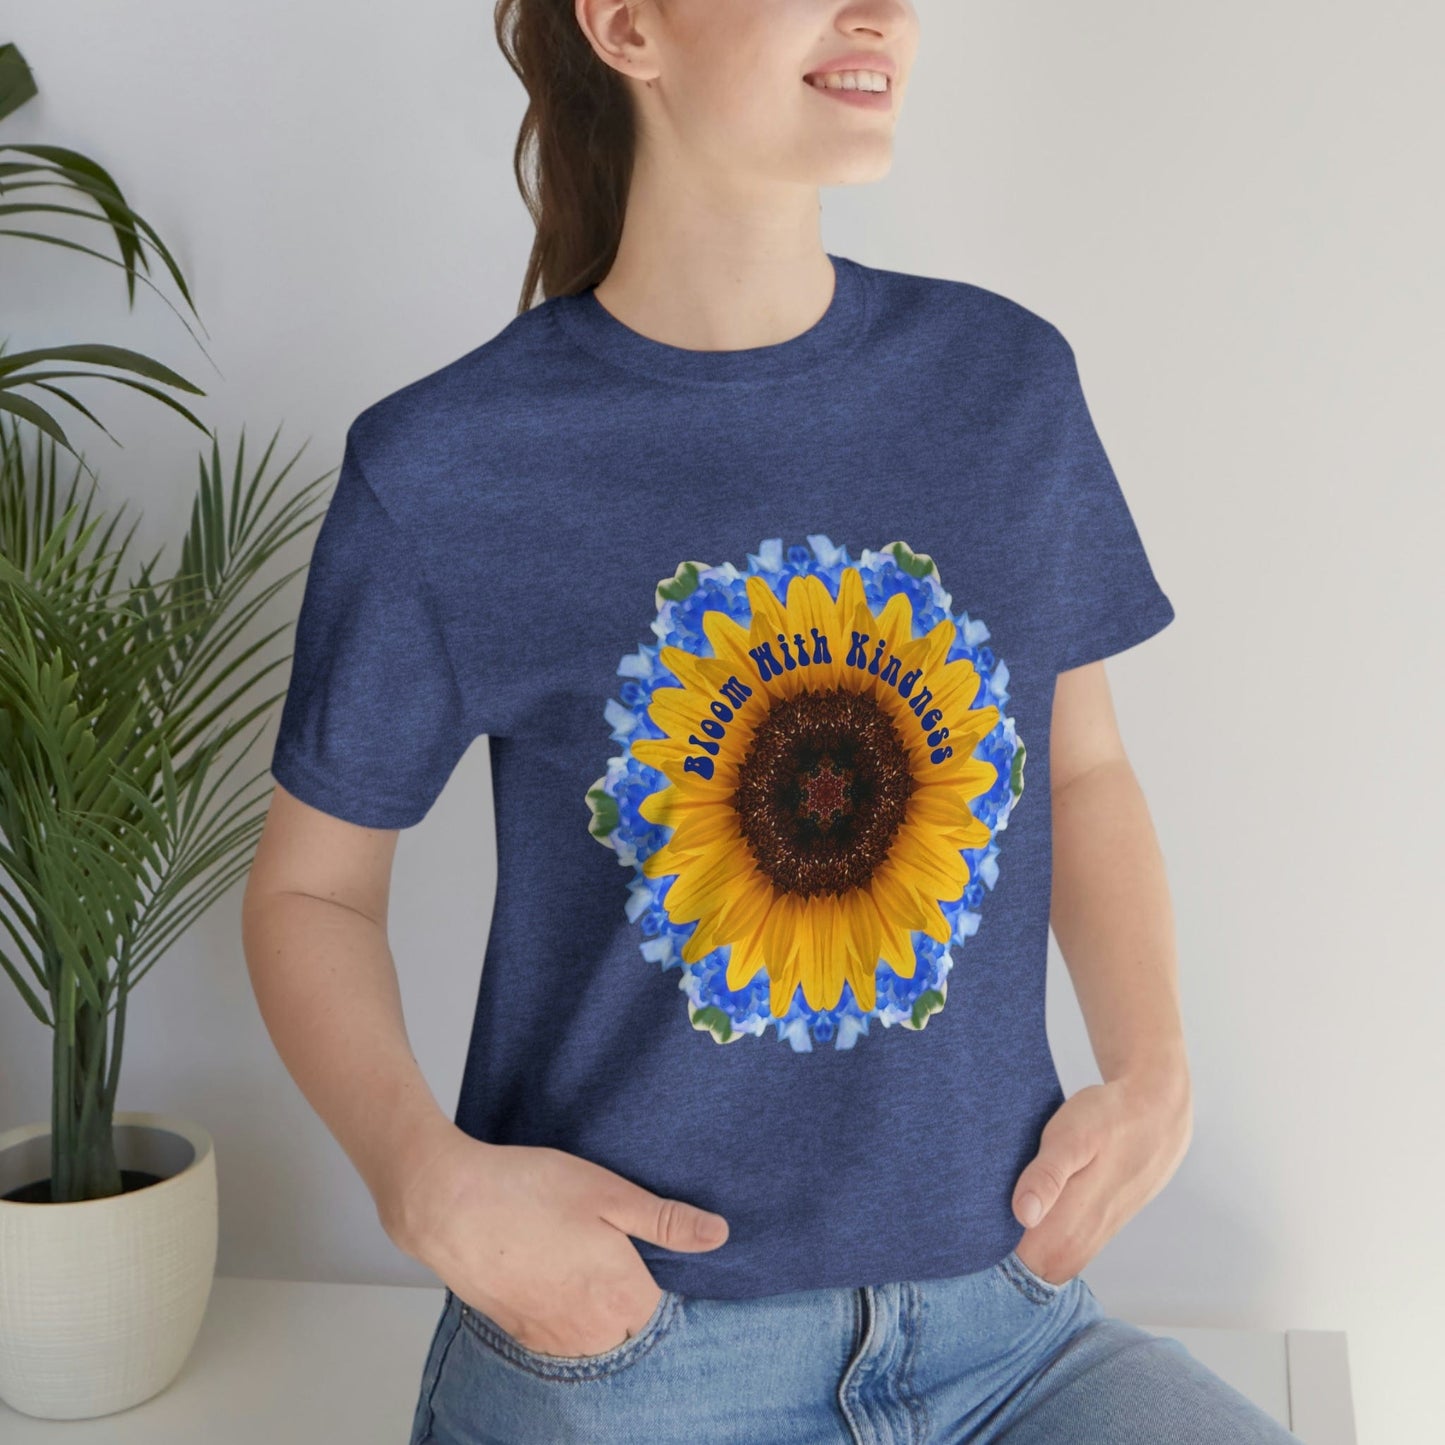 Sunflower TShirt, Zen Poet Shirt, Fun Shirt Designs, Cute Shirts Teens, Kindness T Shirt Bloom With Kindness